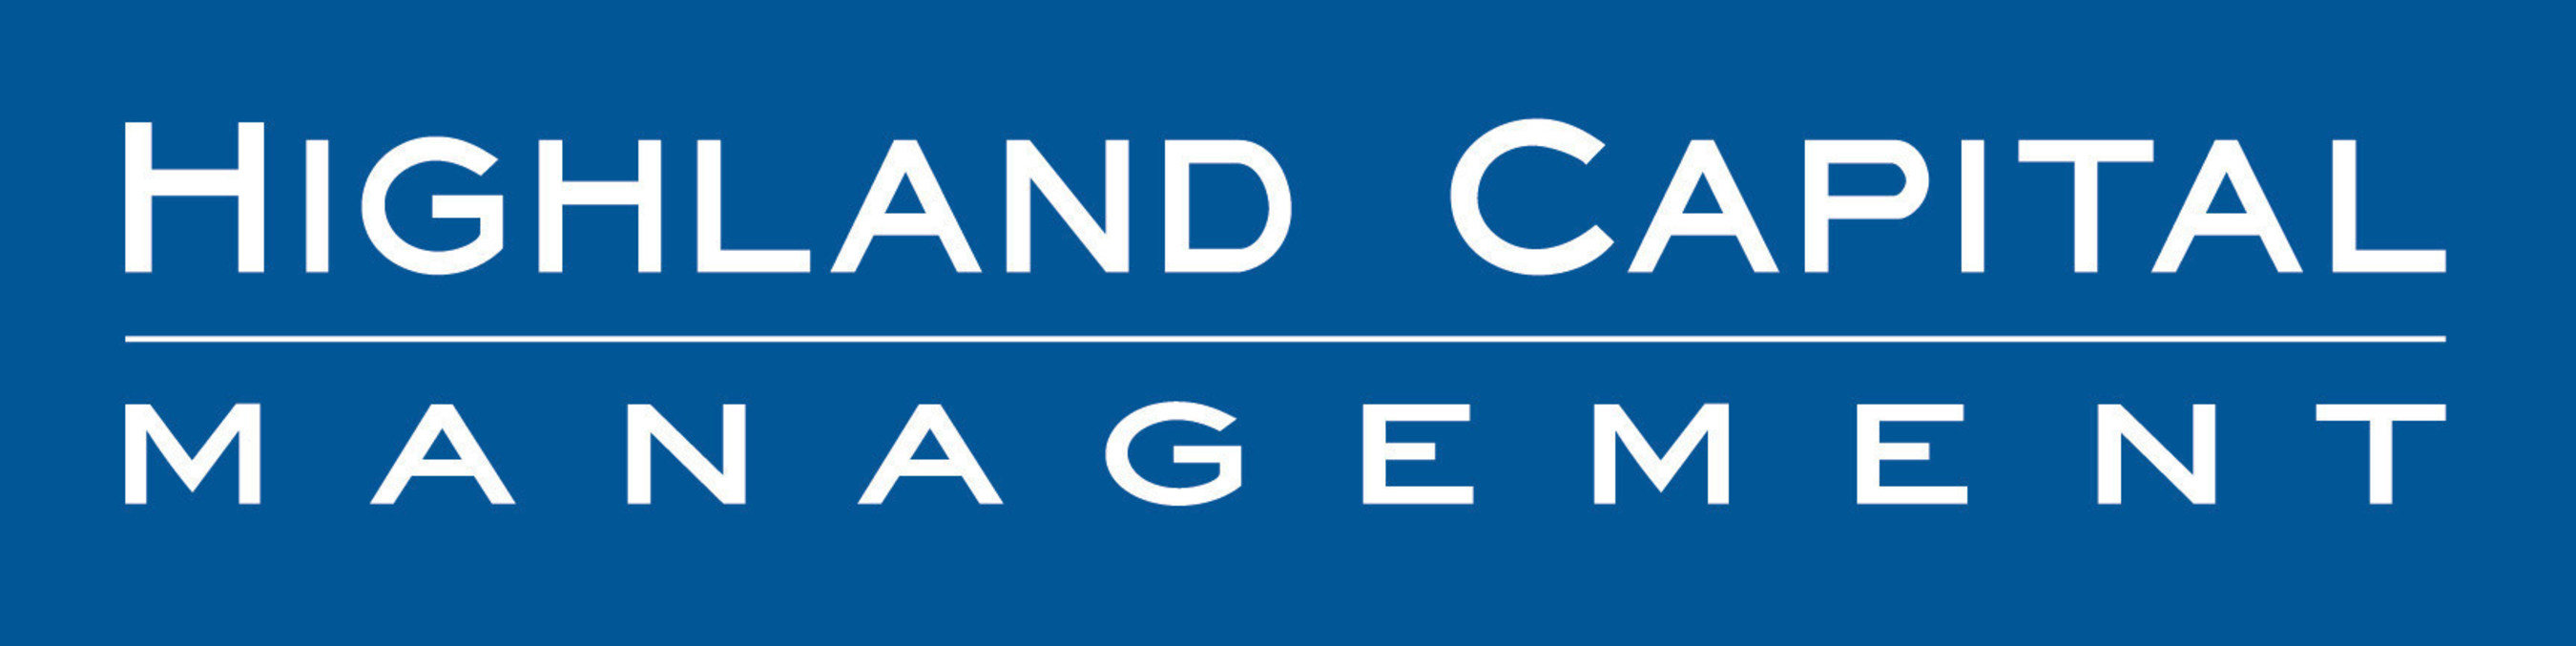 Highland Capital Management logo